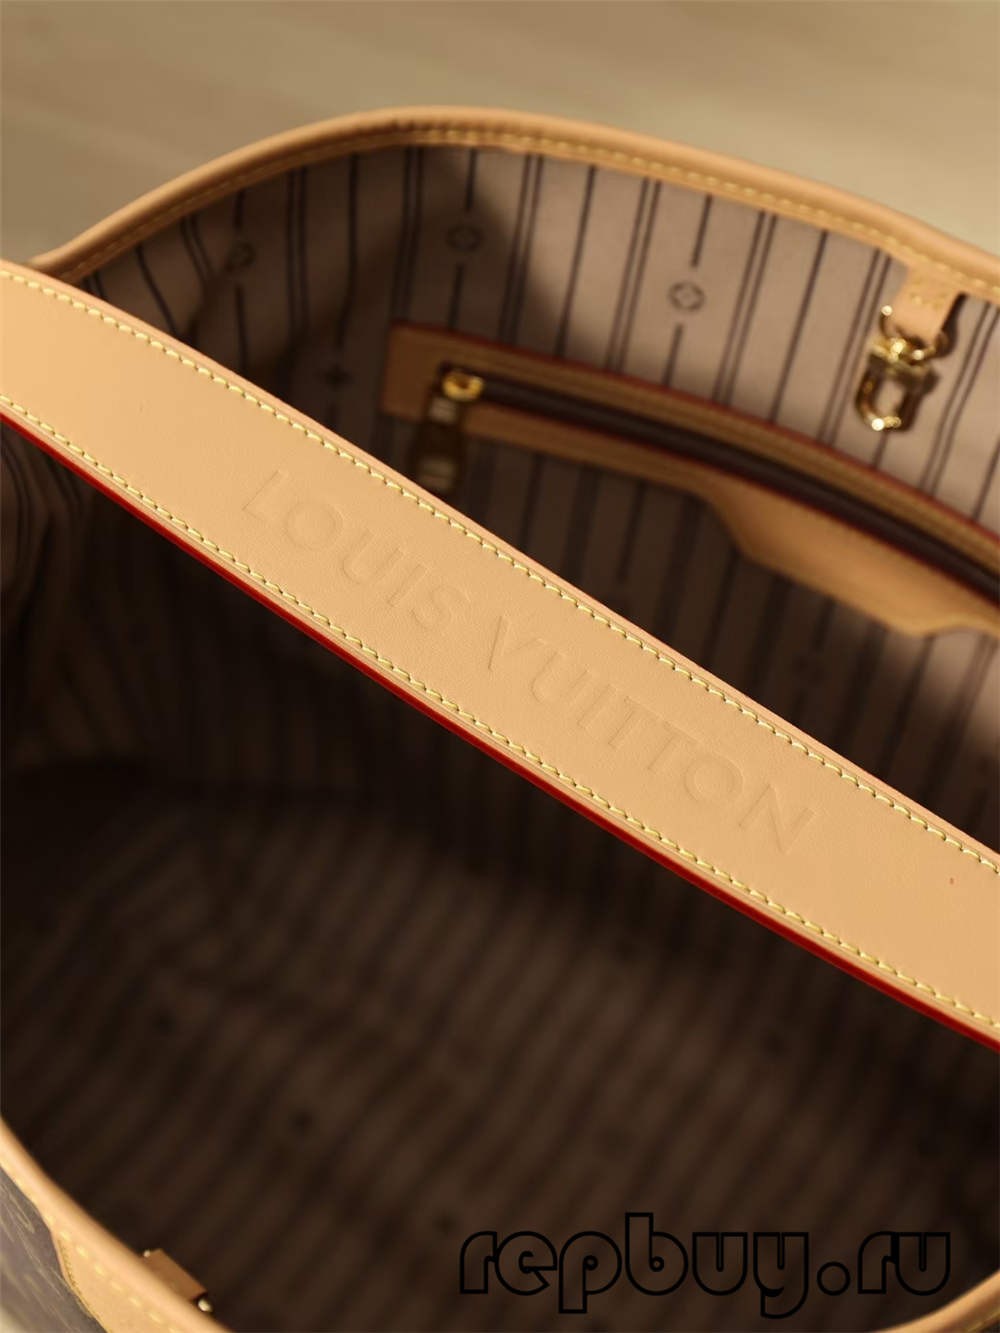 Louis Vuitton Re Fabrication borse replica di alta qualità（2022 più recenti）-Migliore qualità falsa Louis Vuitton Bag Online Store, Replica designer bag ru